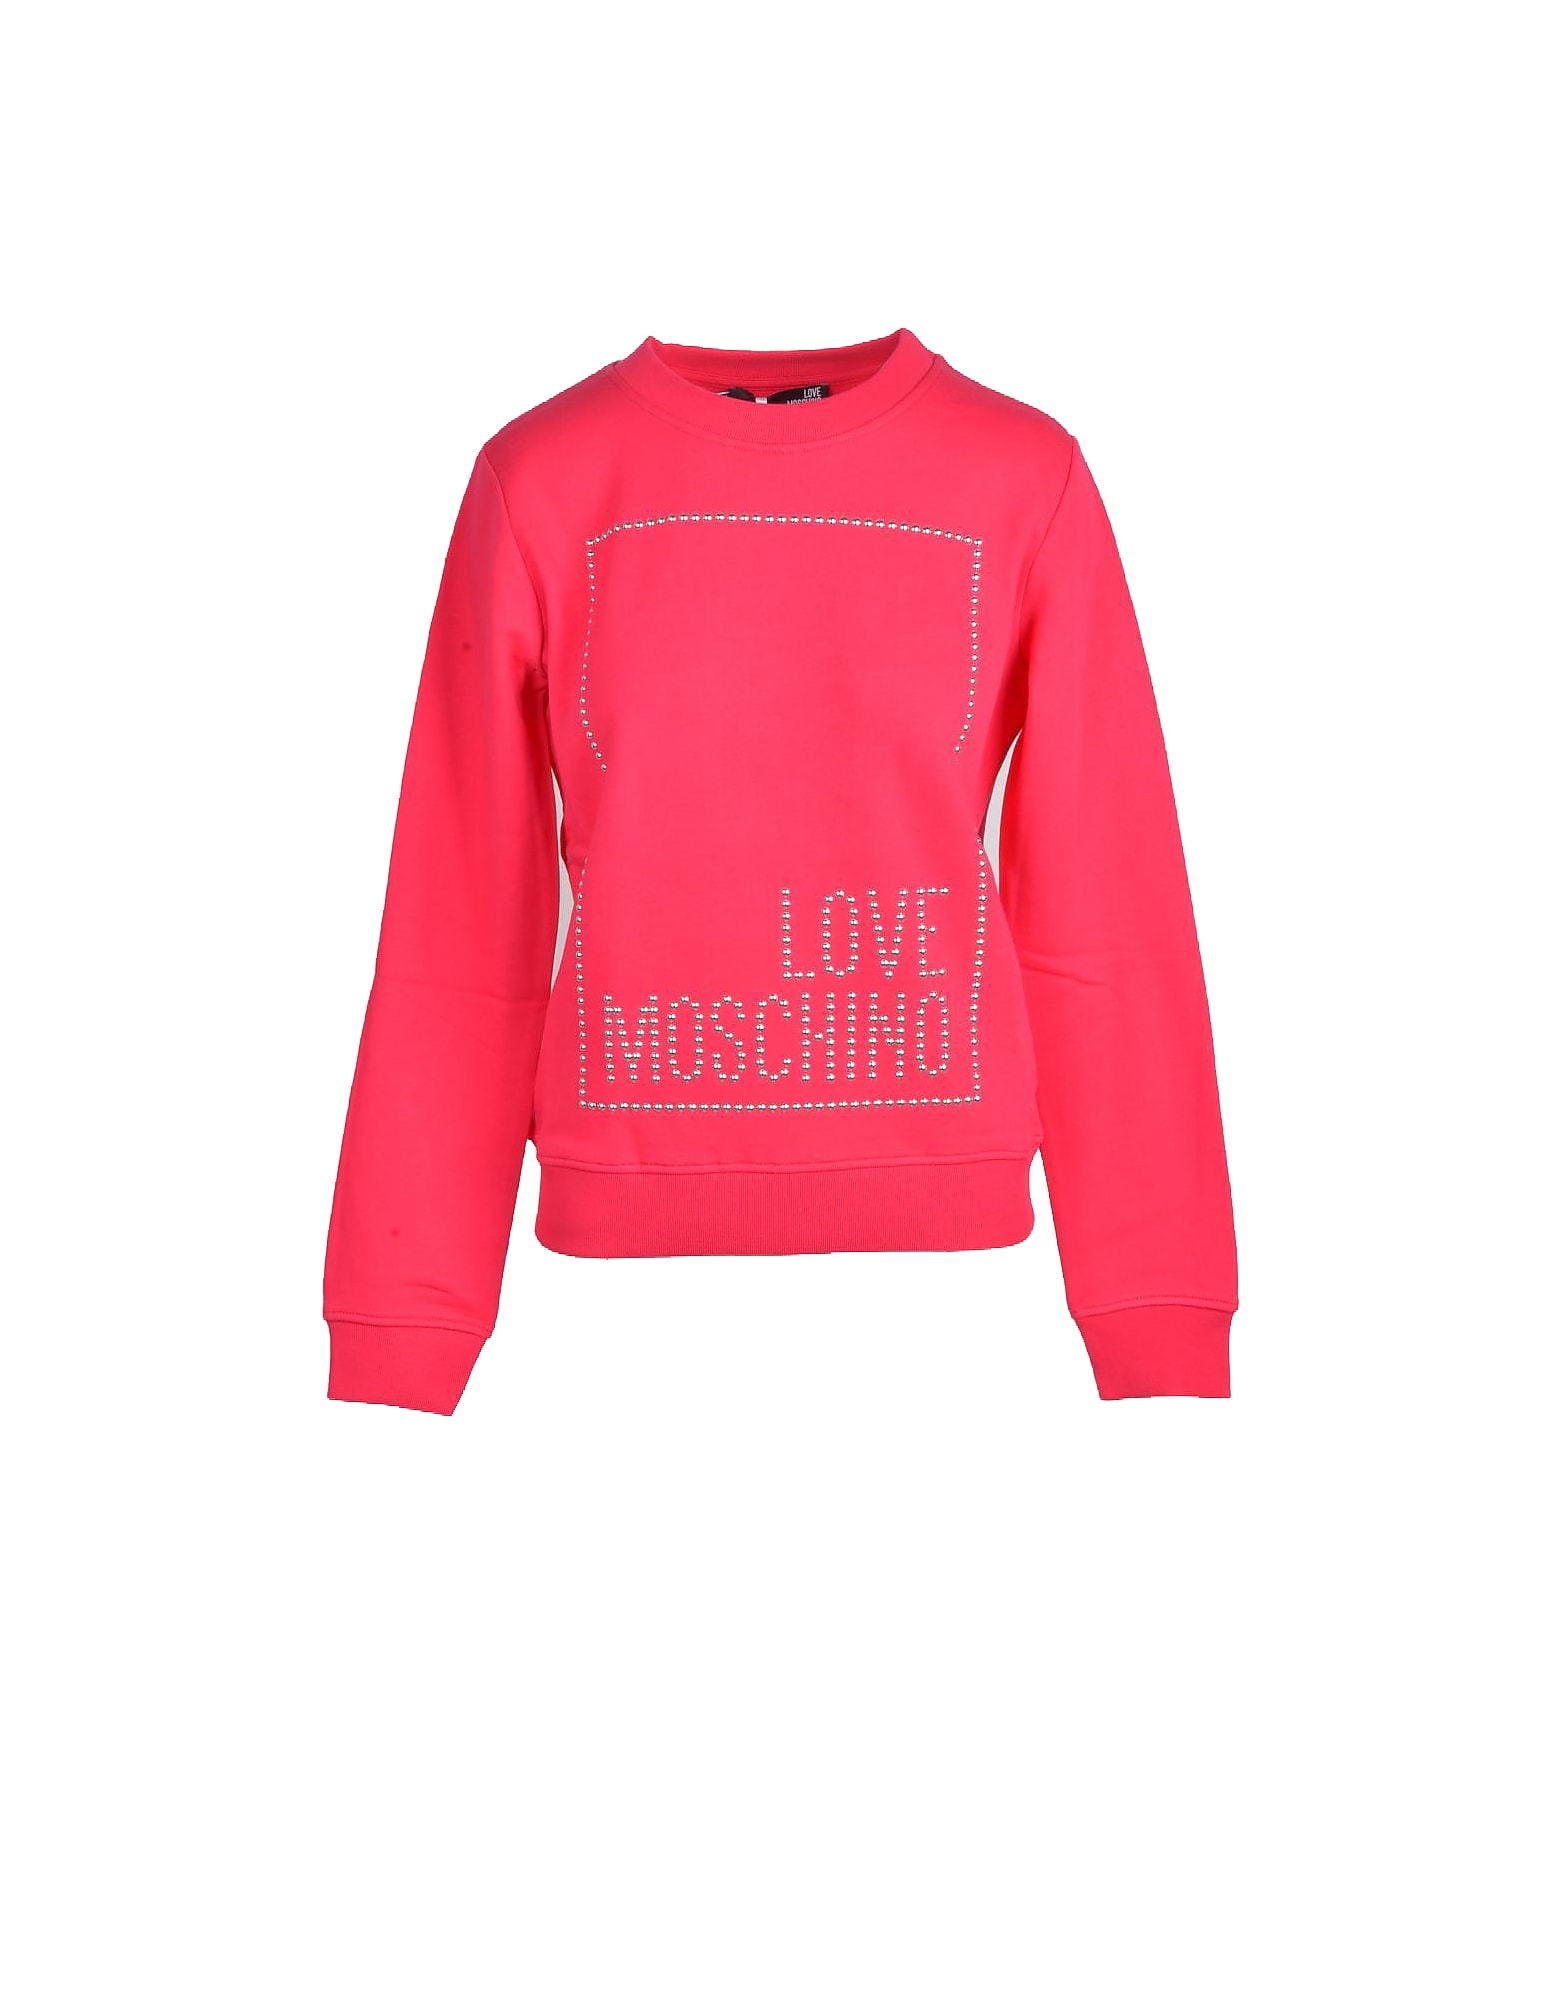 Love Moschino Womens Fuchsia Sweatshirt